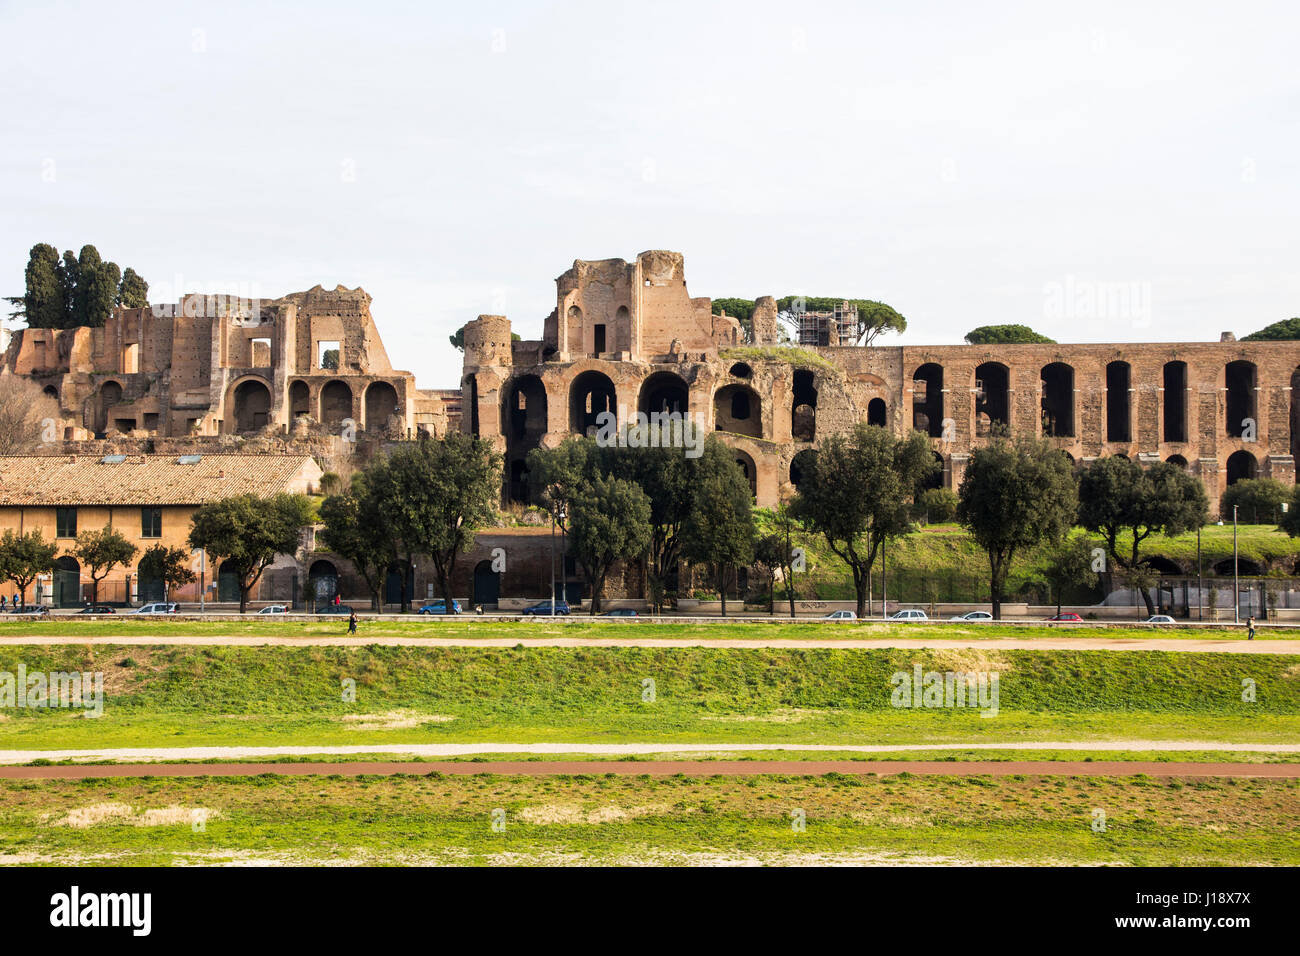 Eingebettet zwischen dem Forum Romanum und Circo Massimo, ist Palatino (Palatin) eine majestätische Ruine wo Romulus Rom gegründet haben soll. Stockfoto